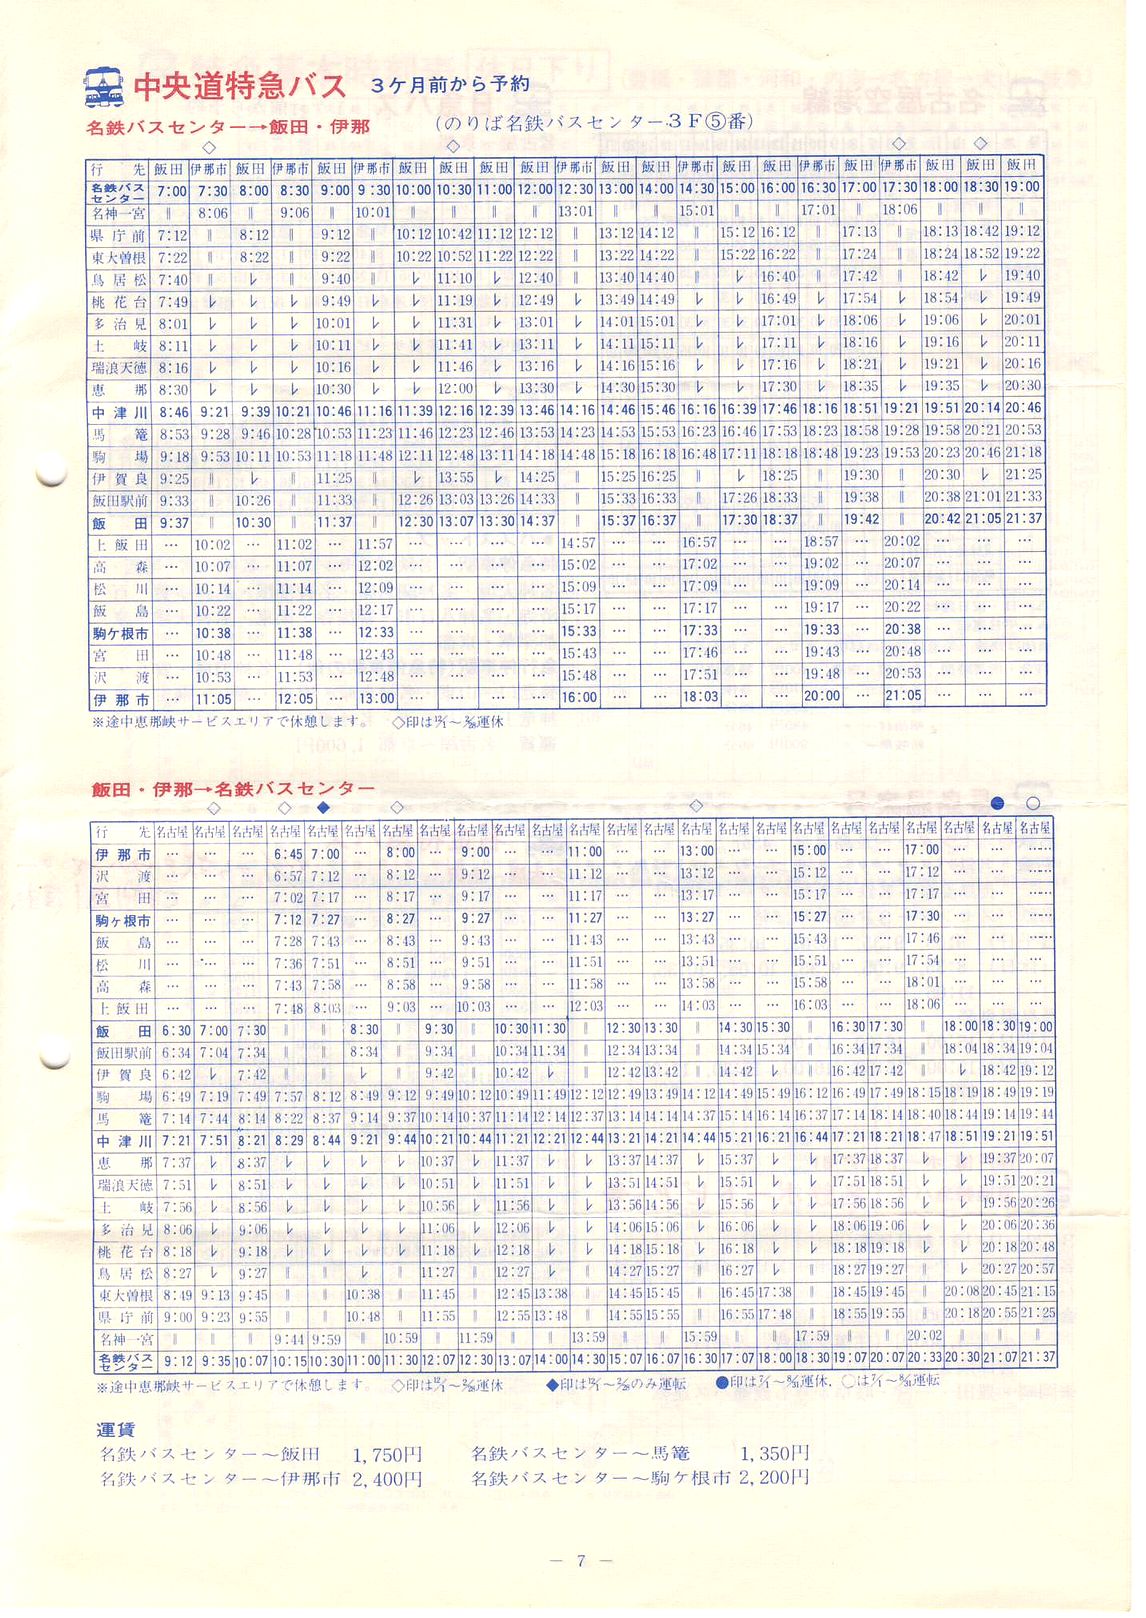 1981-04-01現在_名古屋鉄道_中部圏の旅のご案内(チラシ)_07